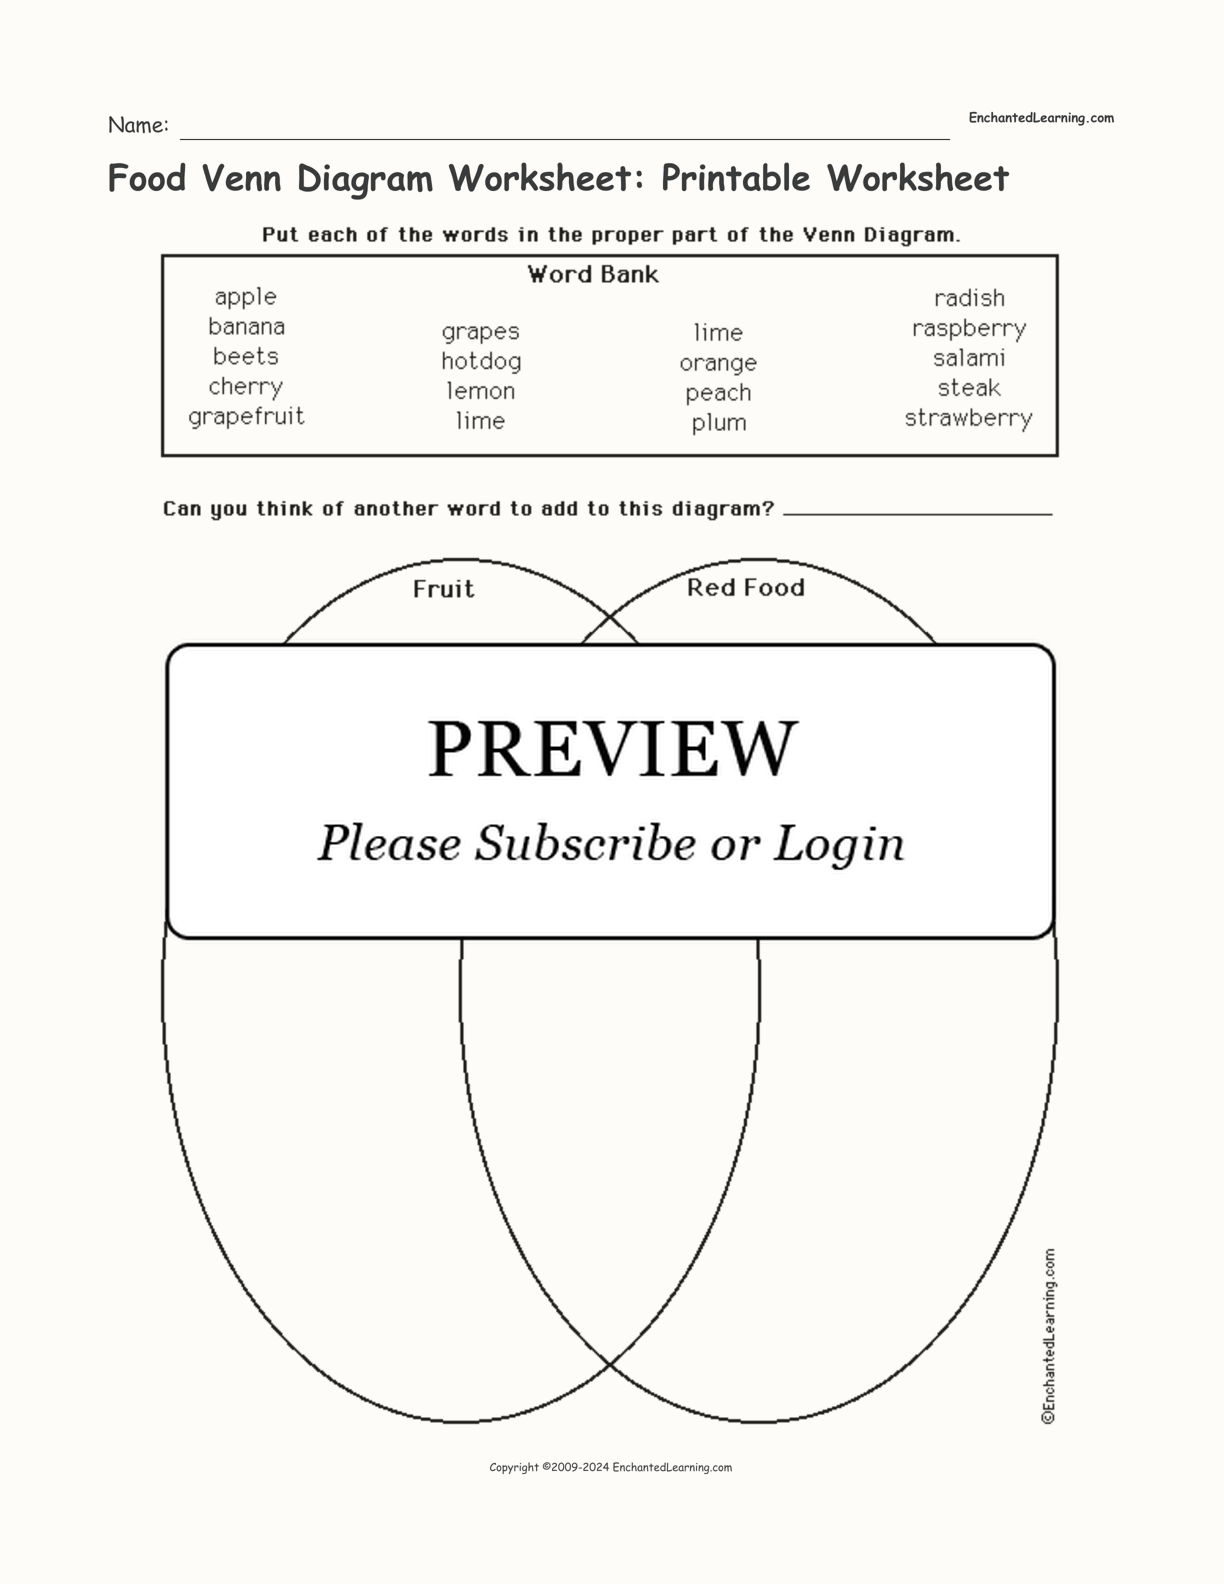 Food Venn Diagram Worksheet: Printable Worksheet interactive worksheet page 1